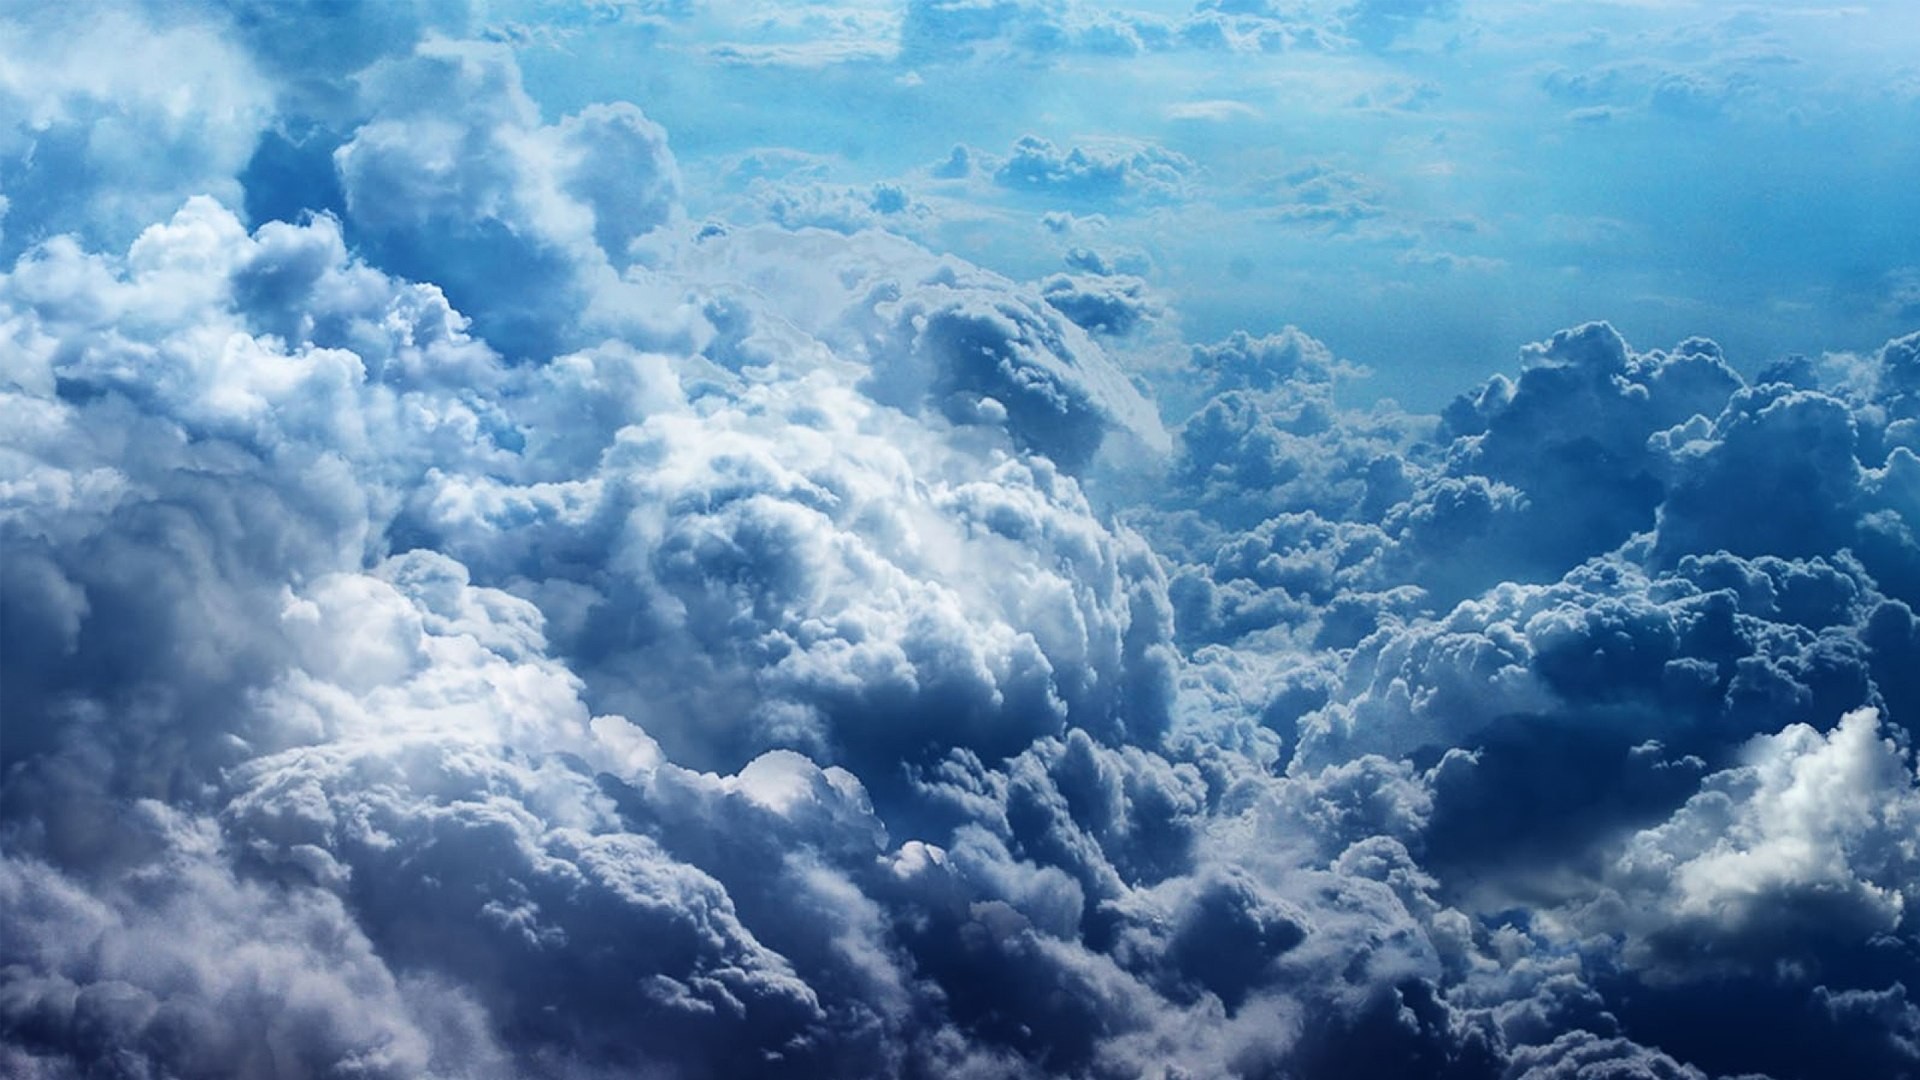 General 1920x1080 clouds nature sky